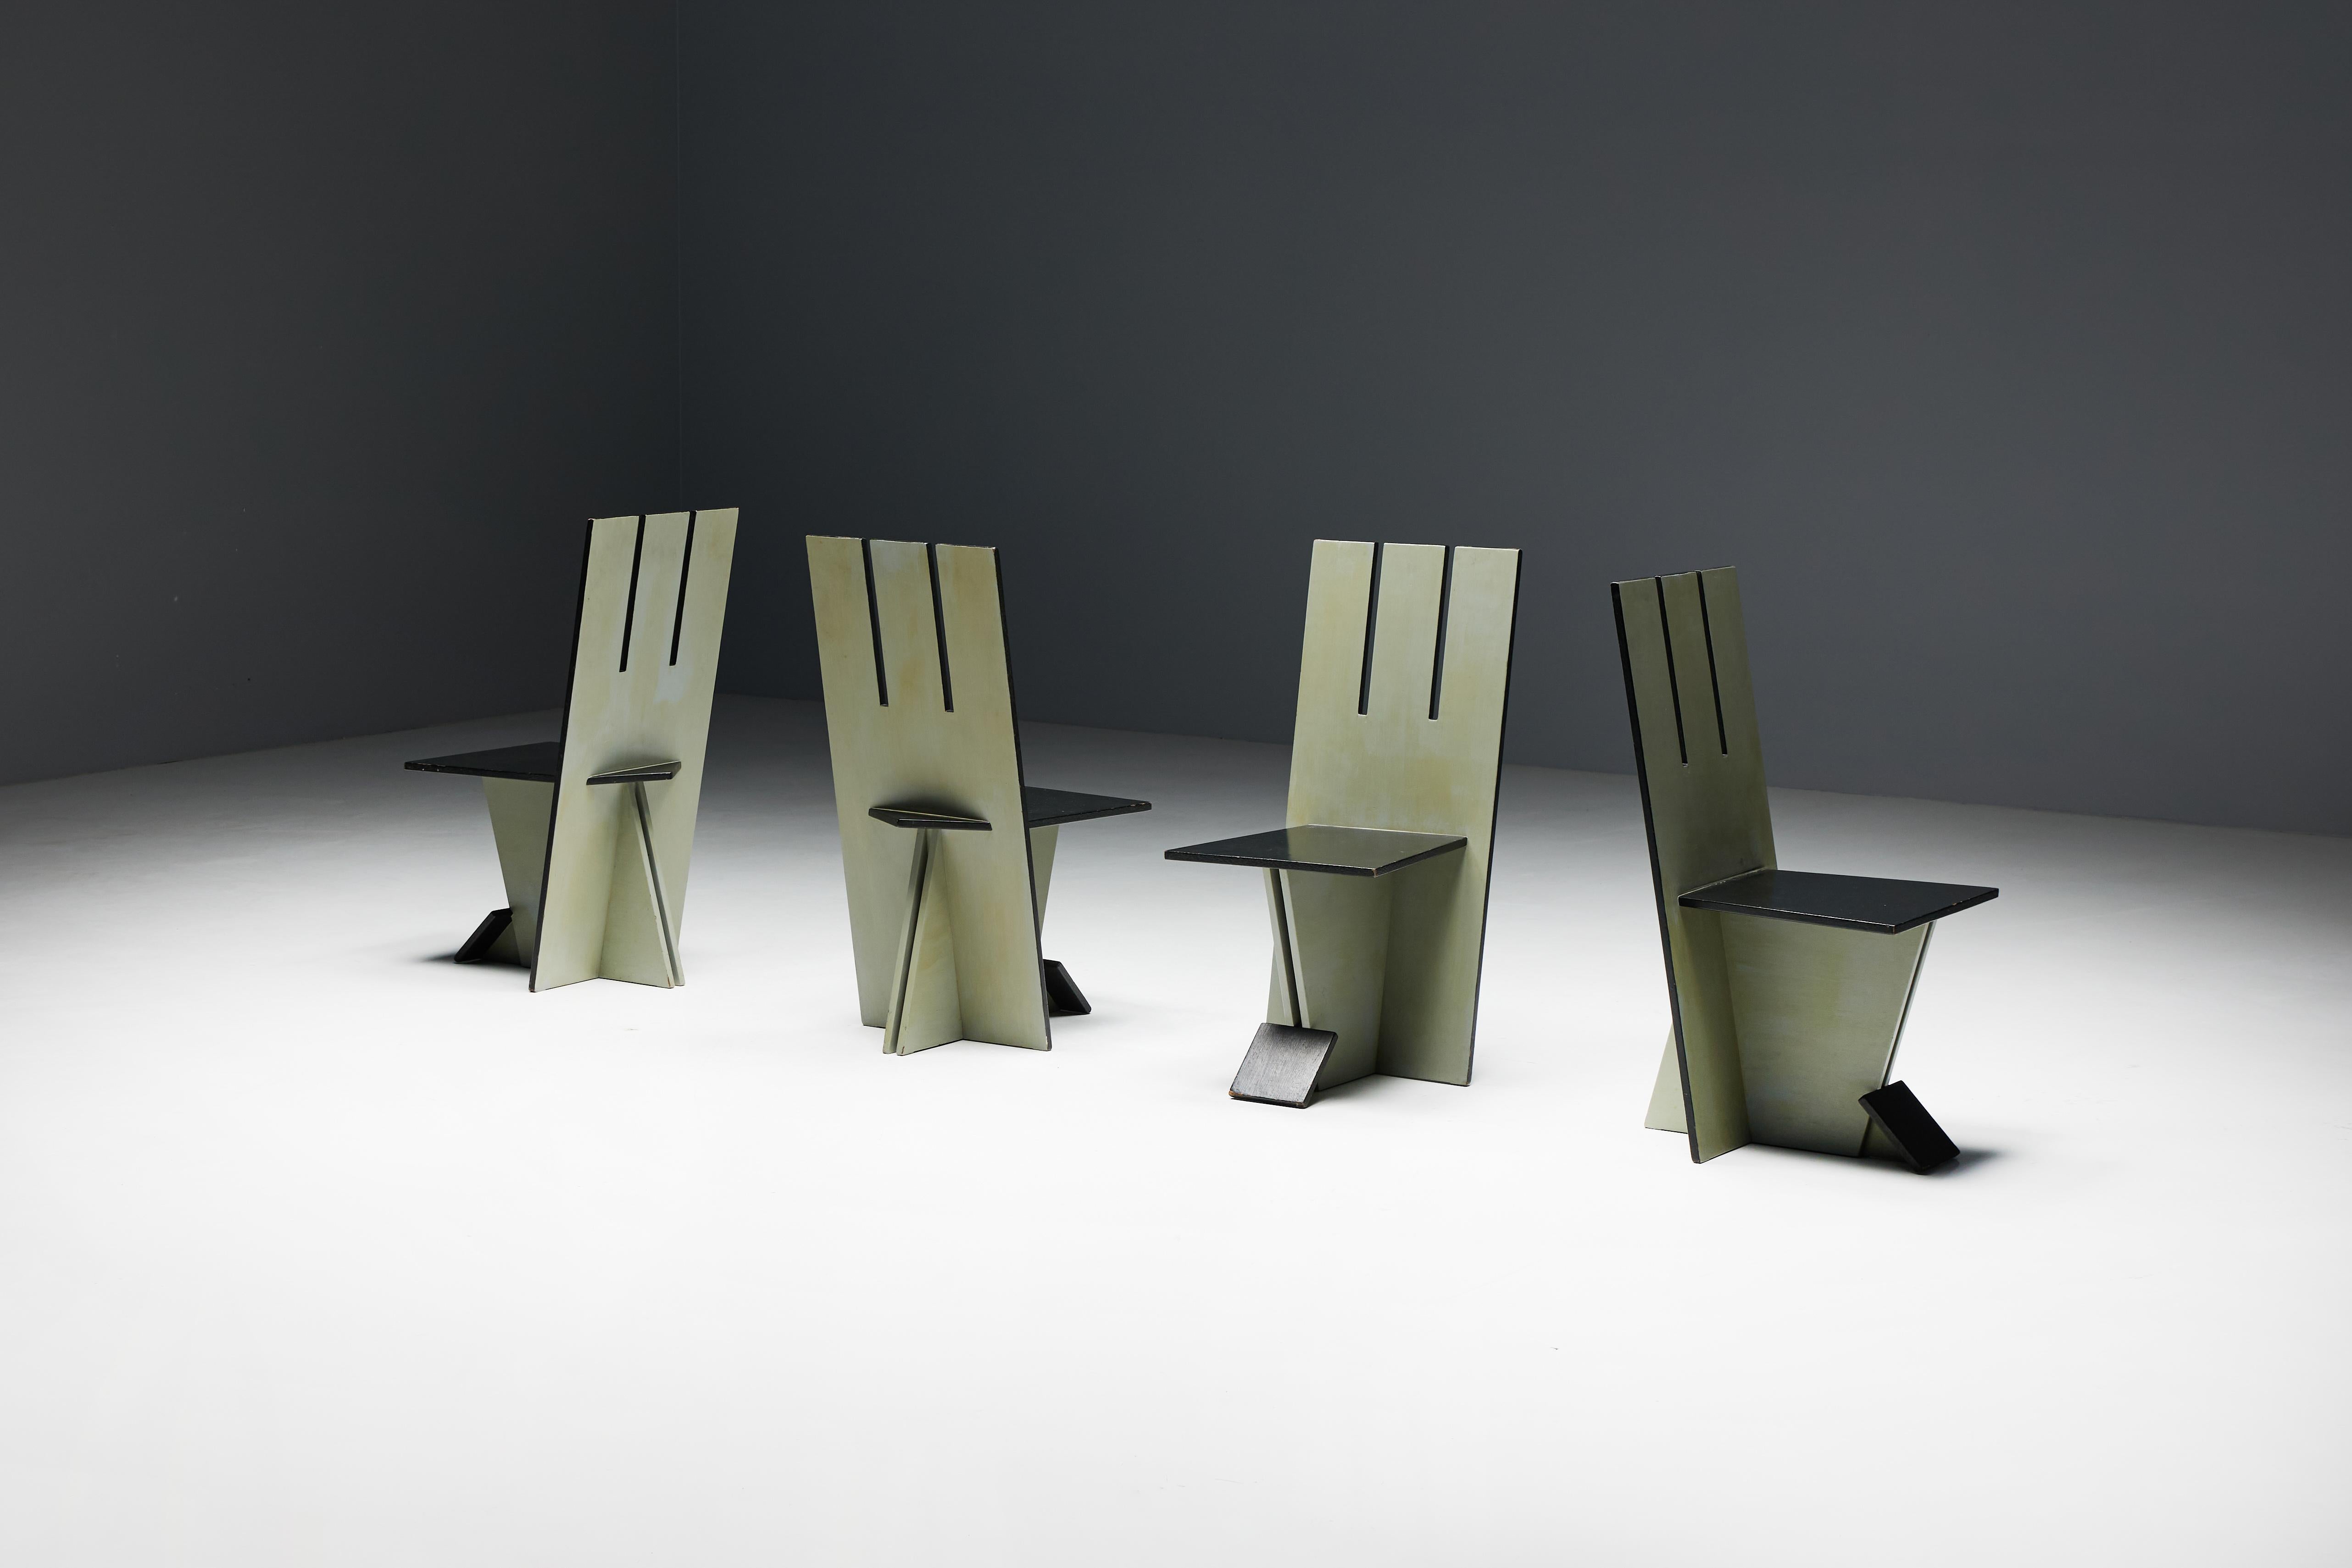 Ensemble de 4 chaises de salle à manger, faisant écho à l'esprit visionnaire du mouvement De Stijl des années 1930 et inspiré par les œuvres pionnières de Vilmos Huszar et Piet Zwart. Construites en bois peint, ces chaises témoignent d'une attention